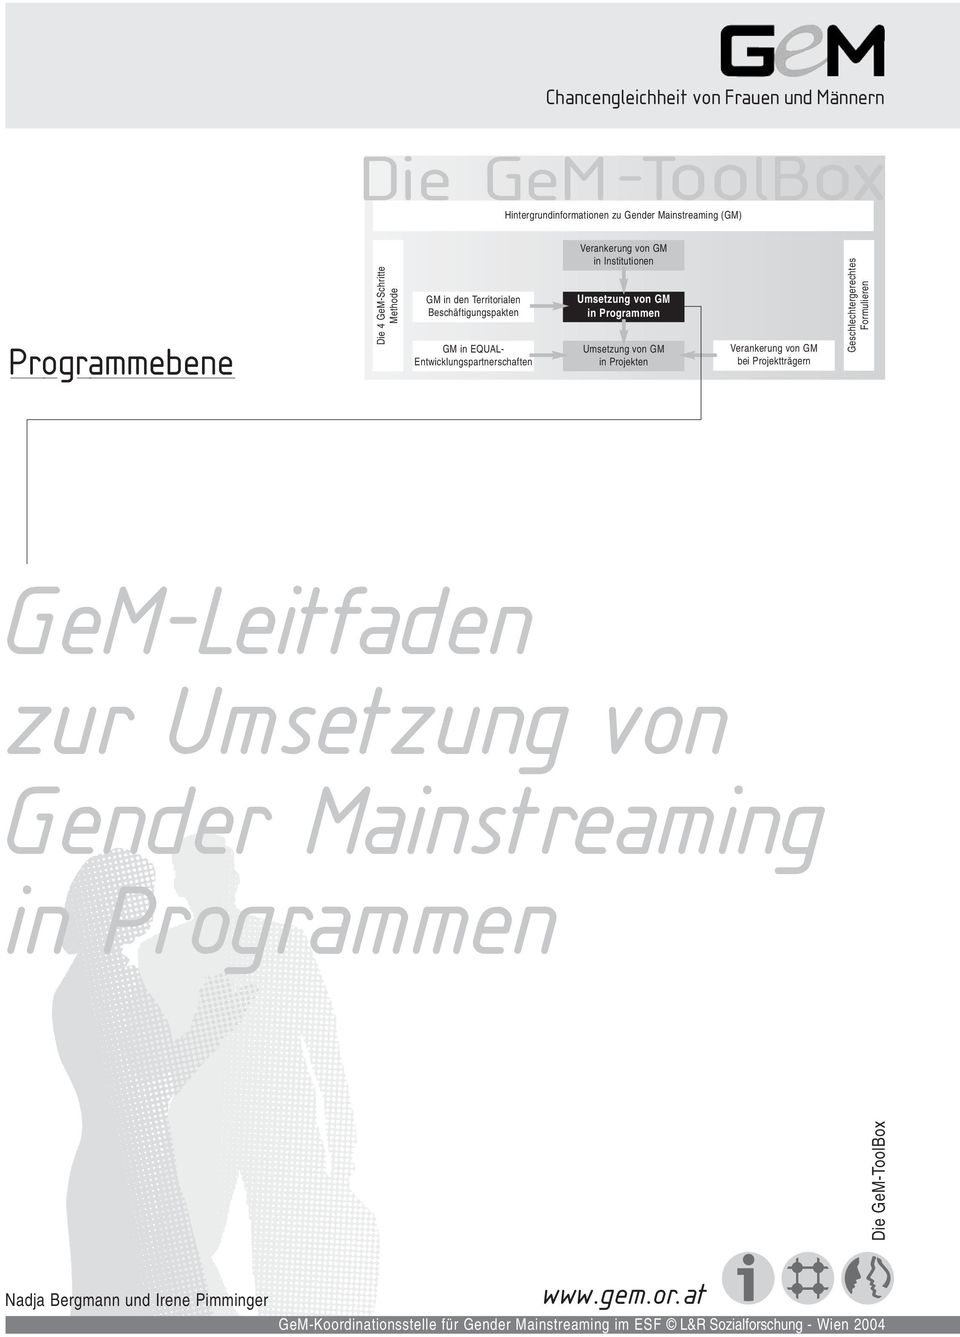 GM in Projekten Verankerung von GM bei Projektträgern GeM-Leitfaden zur Umsetzung von Gender Mainstreaming in Programmen Die GeM-ToolBox